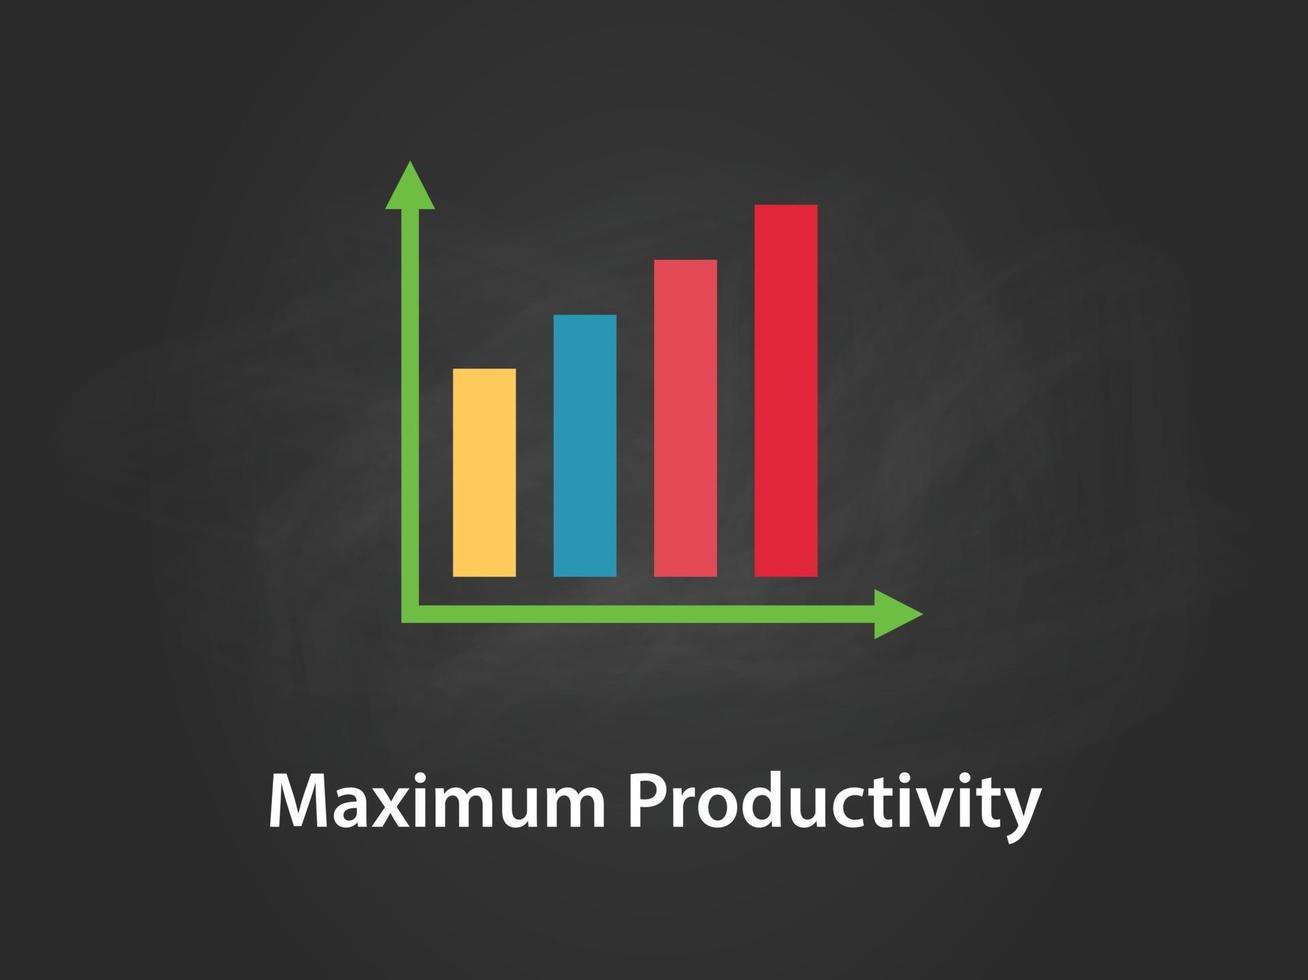 ilustração do gráfico de produtividade máxima com barra colorida vetor